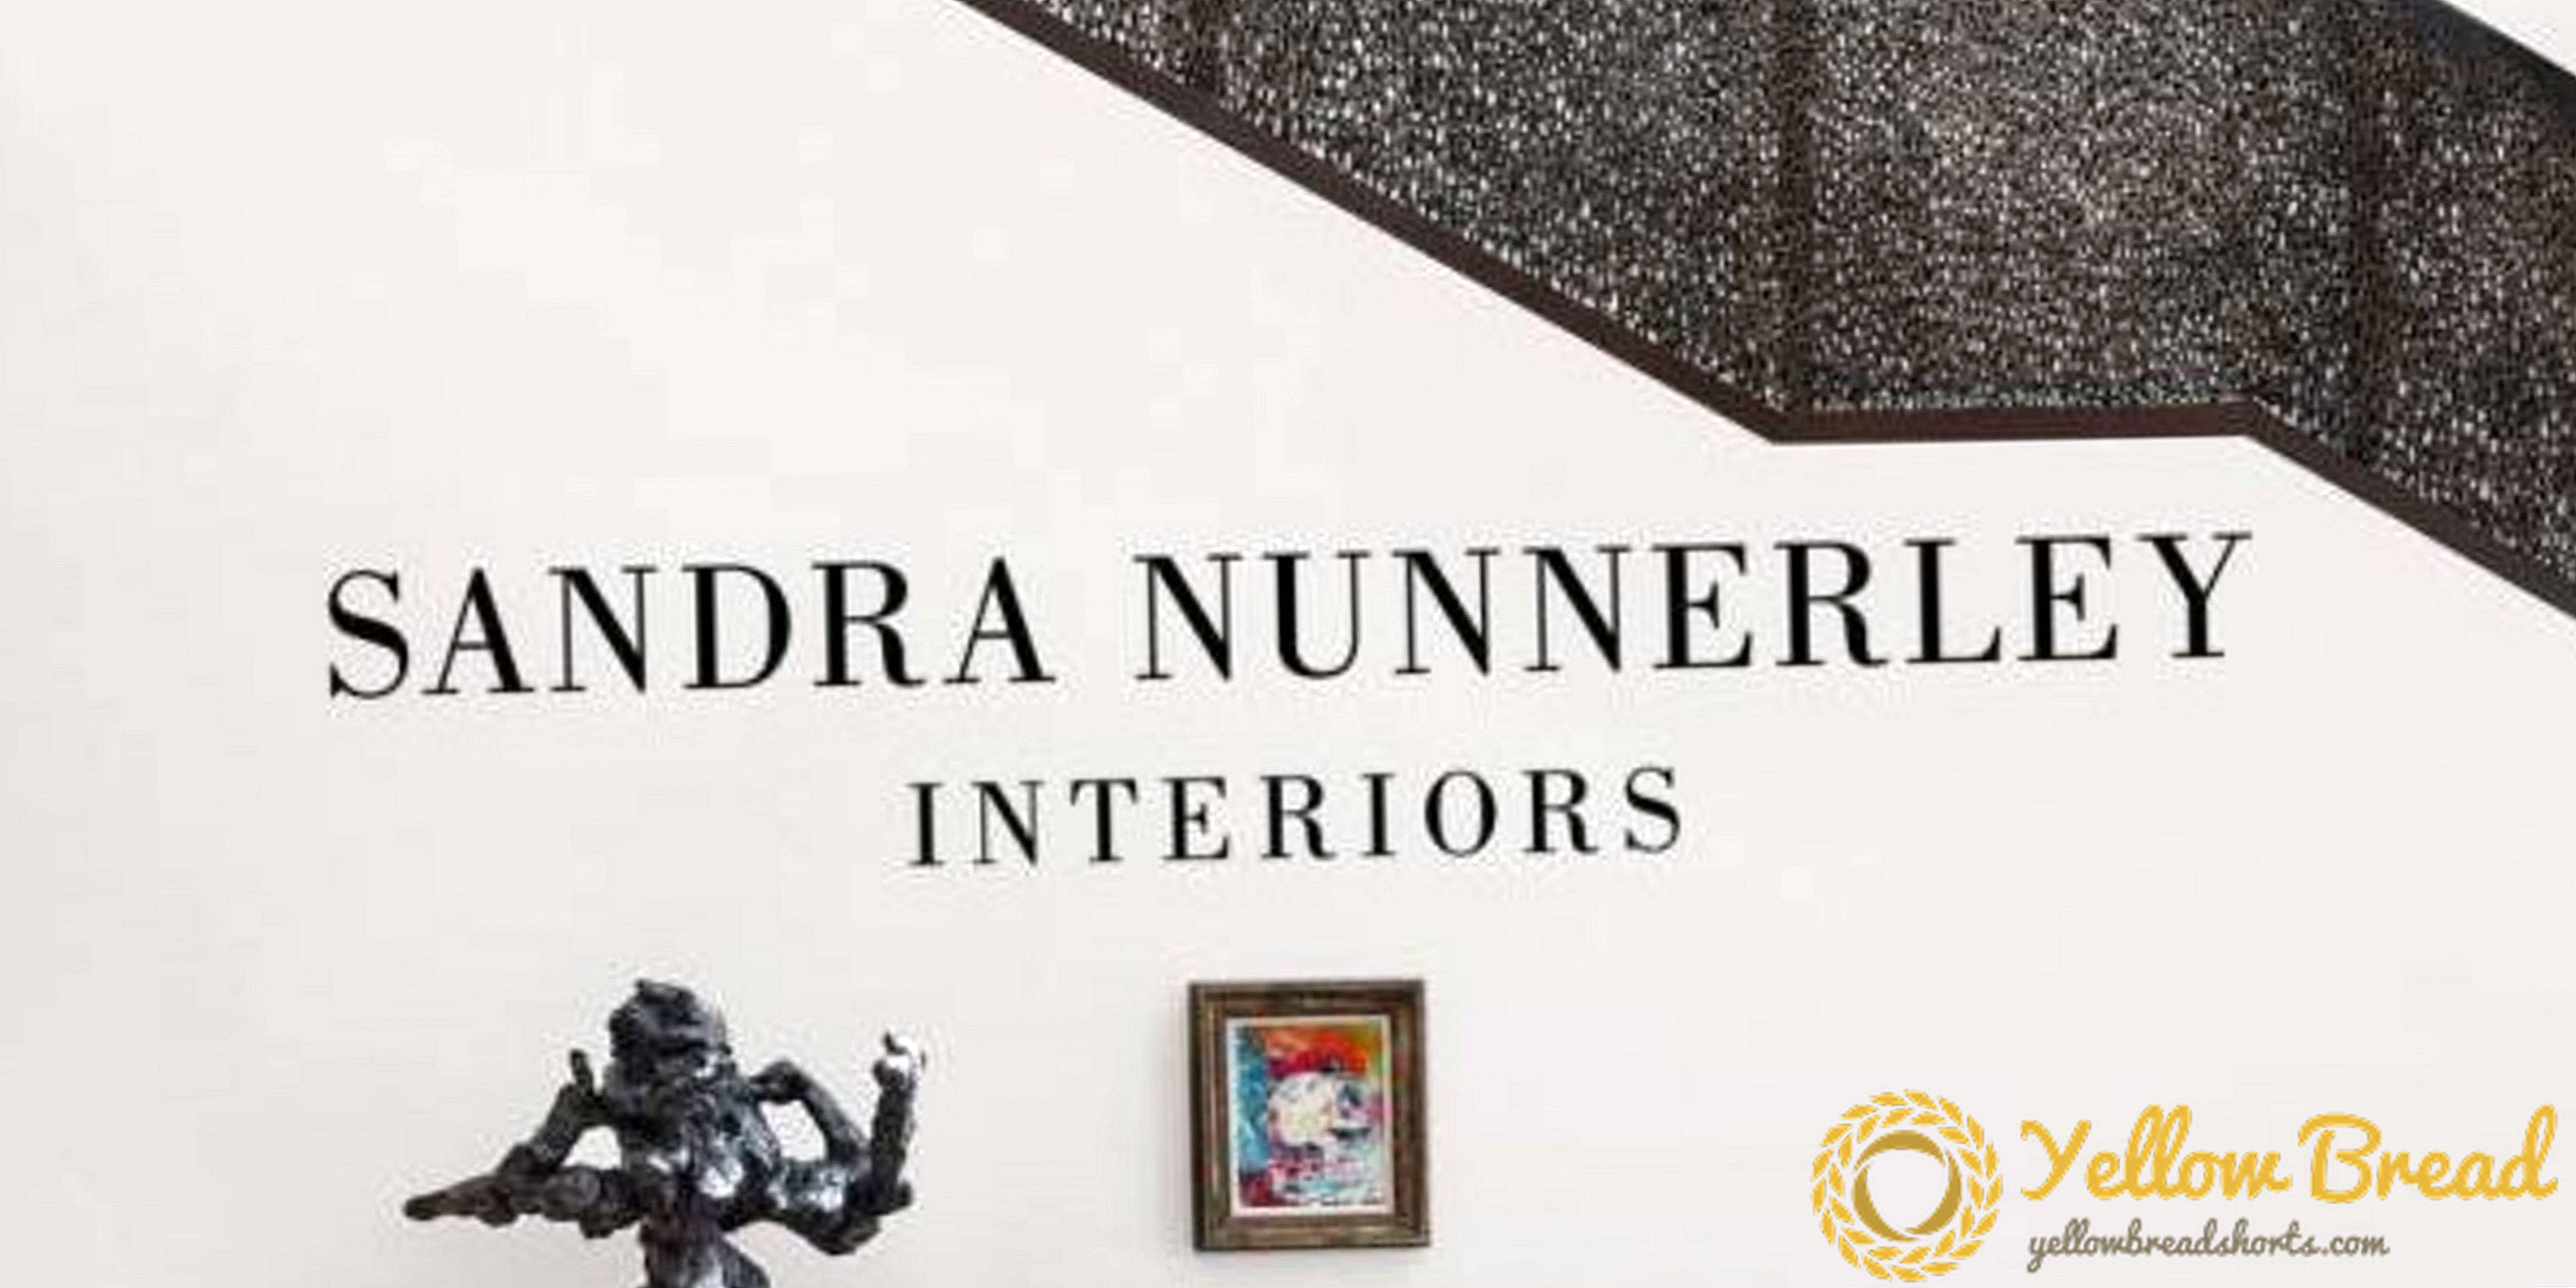 Een nieuw ontwerp Tome Chronicles Sandra Nunnerley's op reizen geïnspireerde interieurs